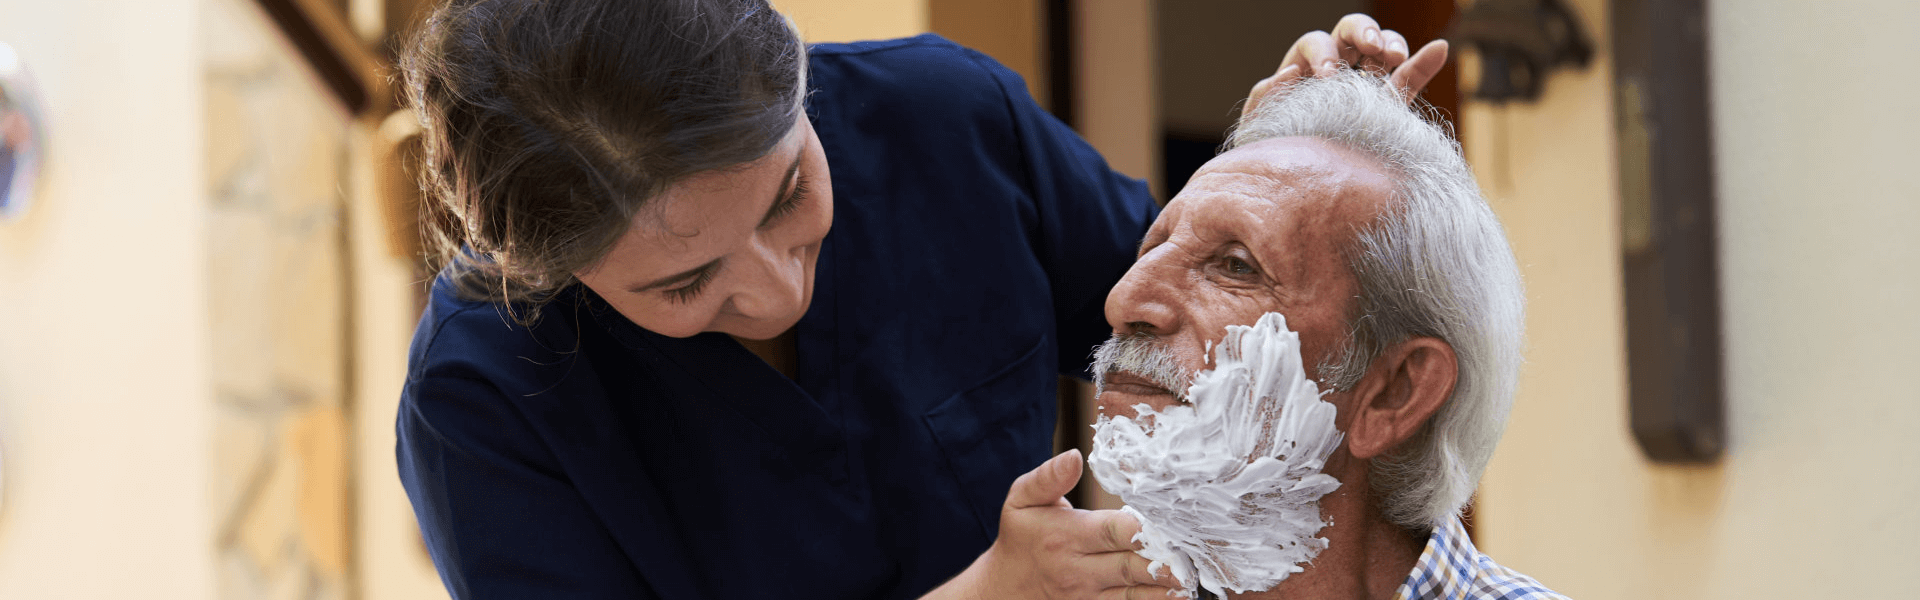 caregiver shaving the beard of the elderly